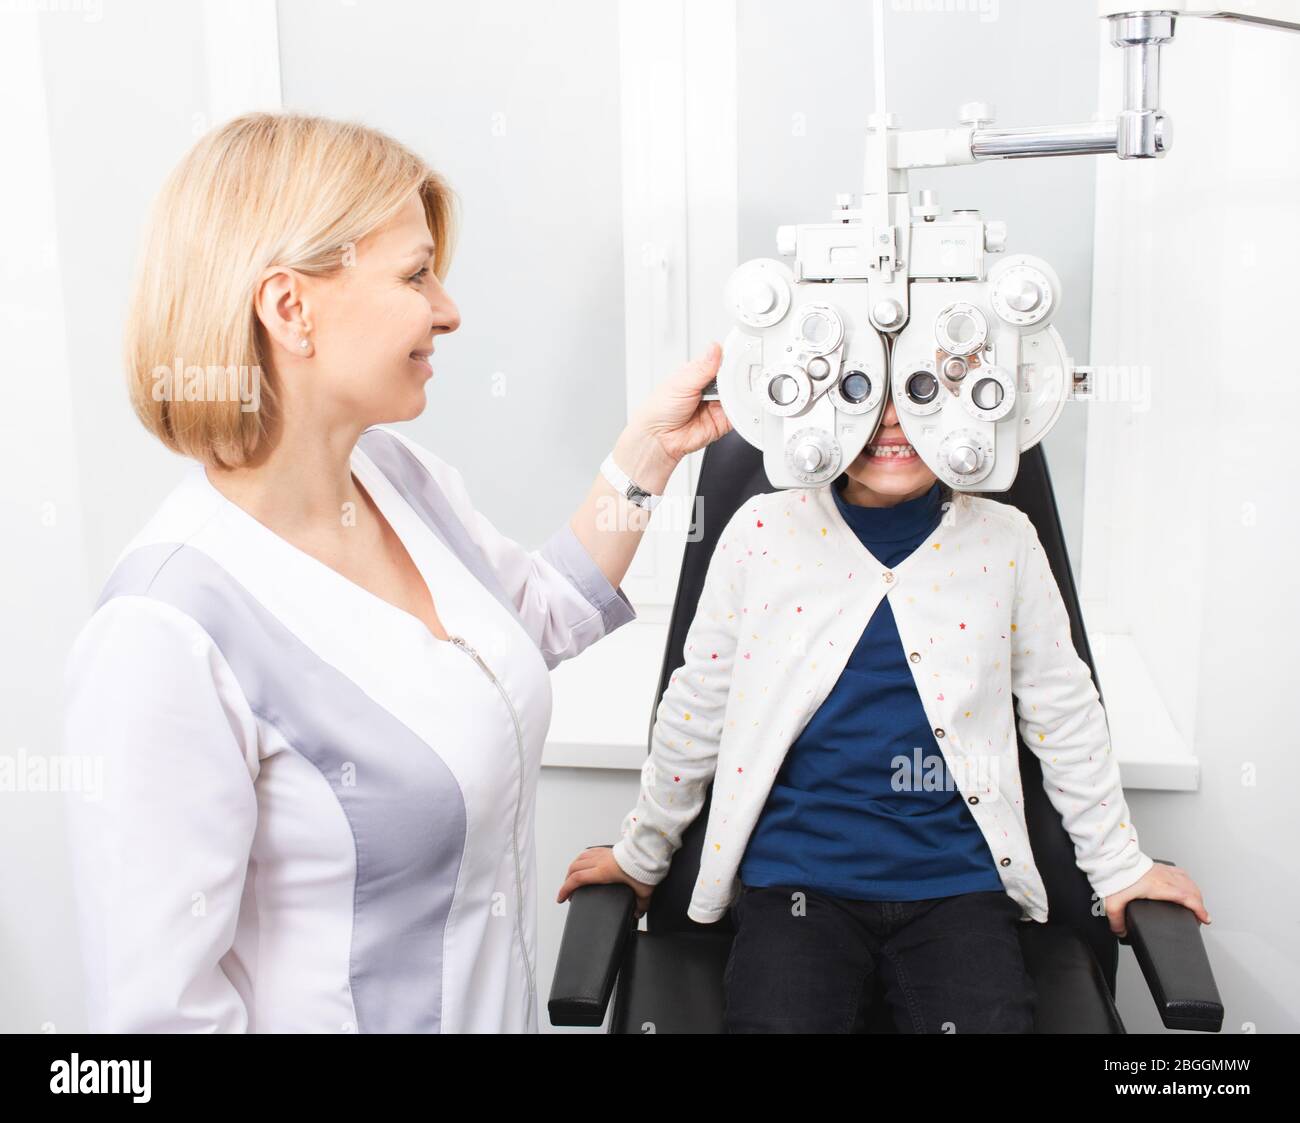 Femme Optométriste vérifie la vision d'une jeune fille. Fille sourie et n'a pas peur de vérifier sa vue dans la clinique. Déficience visuelle chez les enfants Banque D'Images